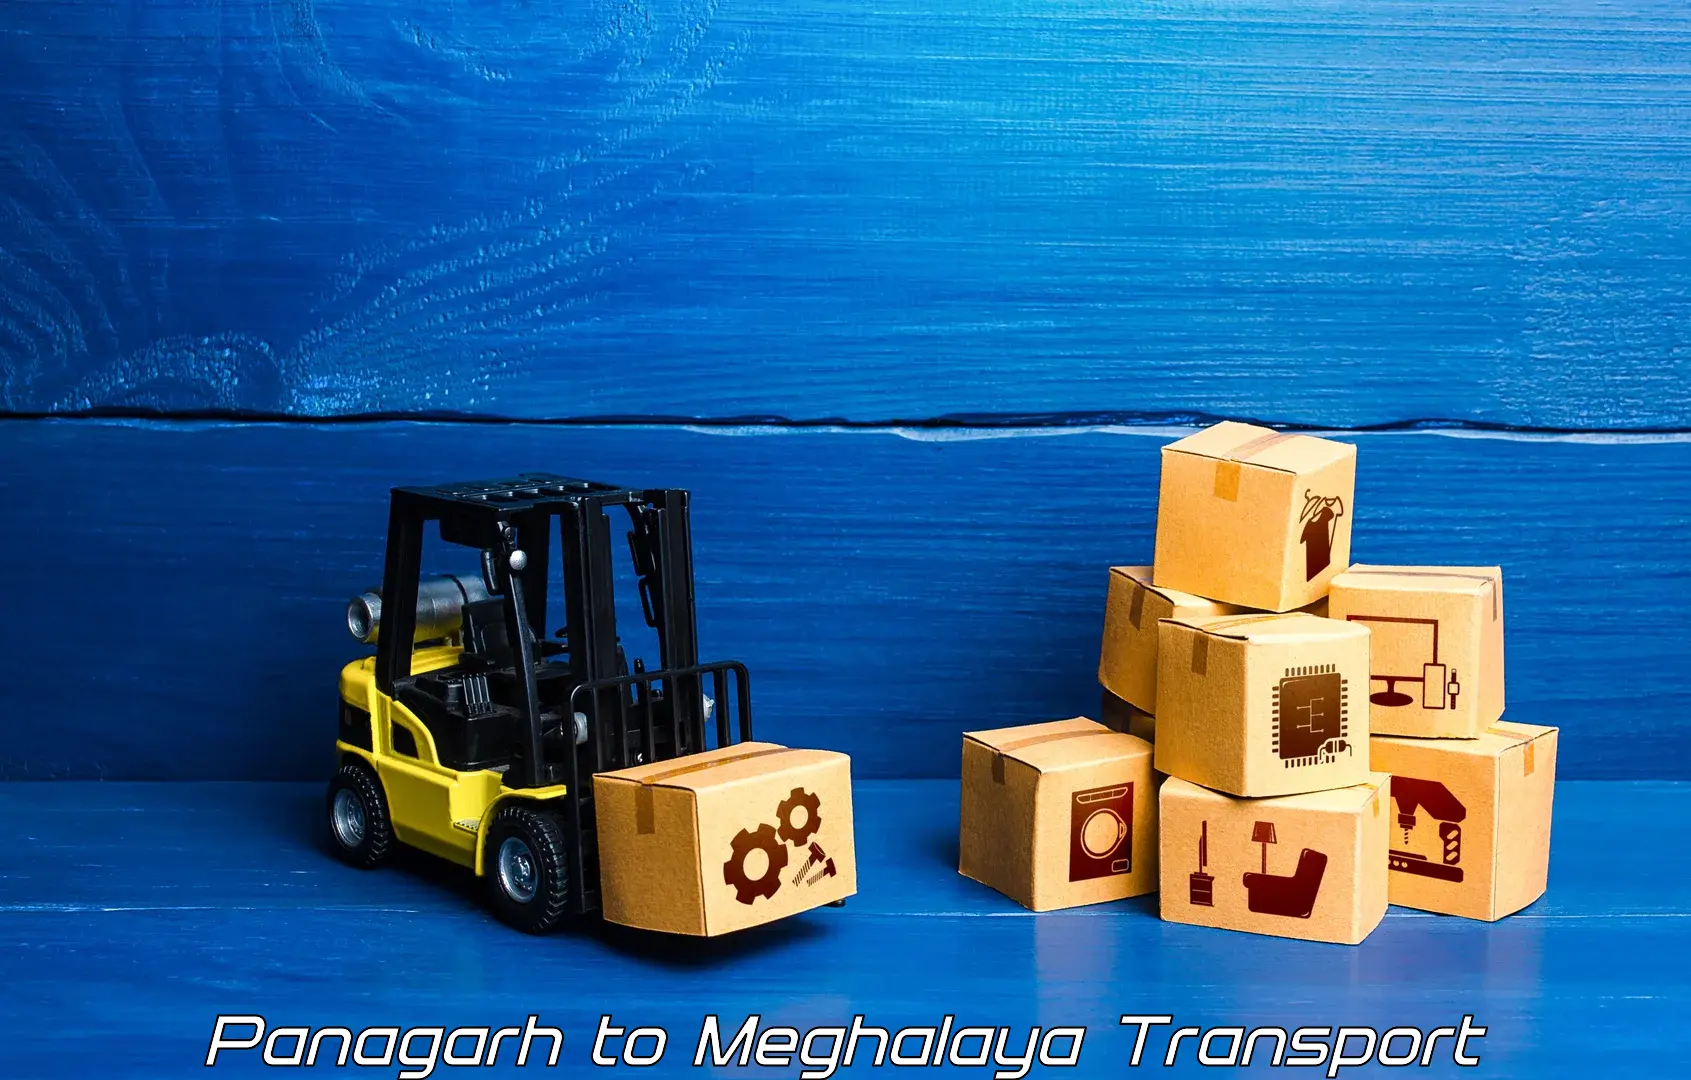 Vehicle courier services Panagarh to Williamnagar